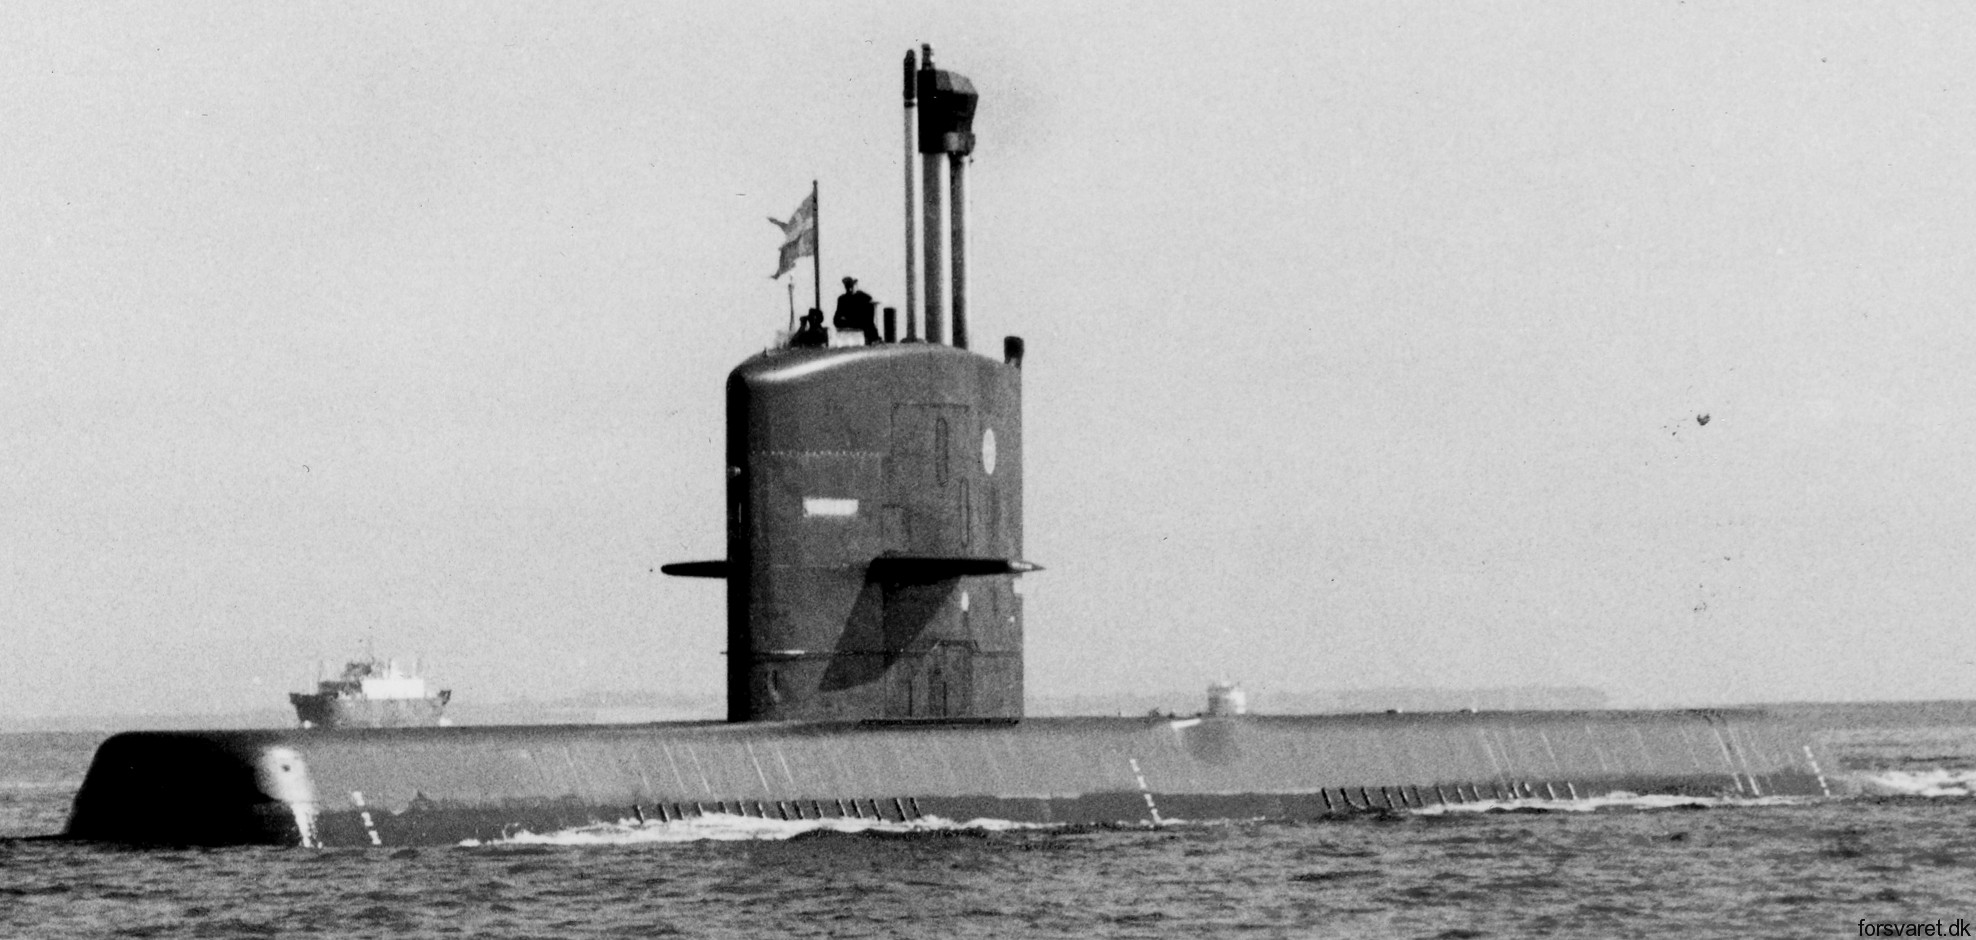 hswms hms nacken näk a14 class submarine ssk swedish navy svenska marinen försvarsmakten kockums 07